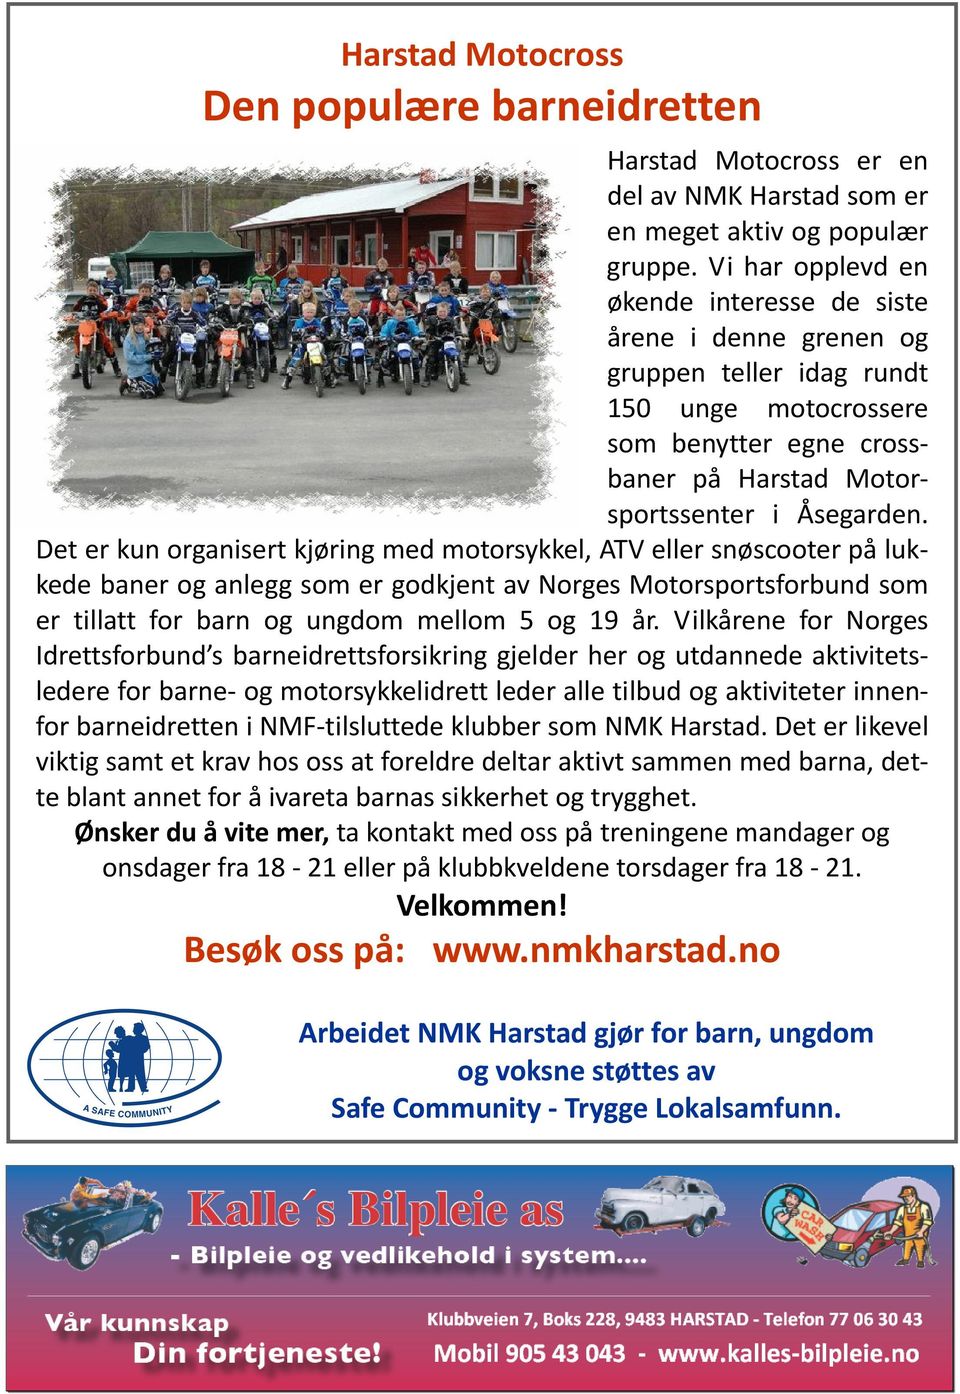 Det er kun organisert kjøring med motorsykkel, ATV eller snøscooter på lukkede baner og anlegg som er godkjent av Norges Motorsportsforbund som er tillatt for barn og ungdom mellom 5 og 19 år.